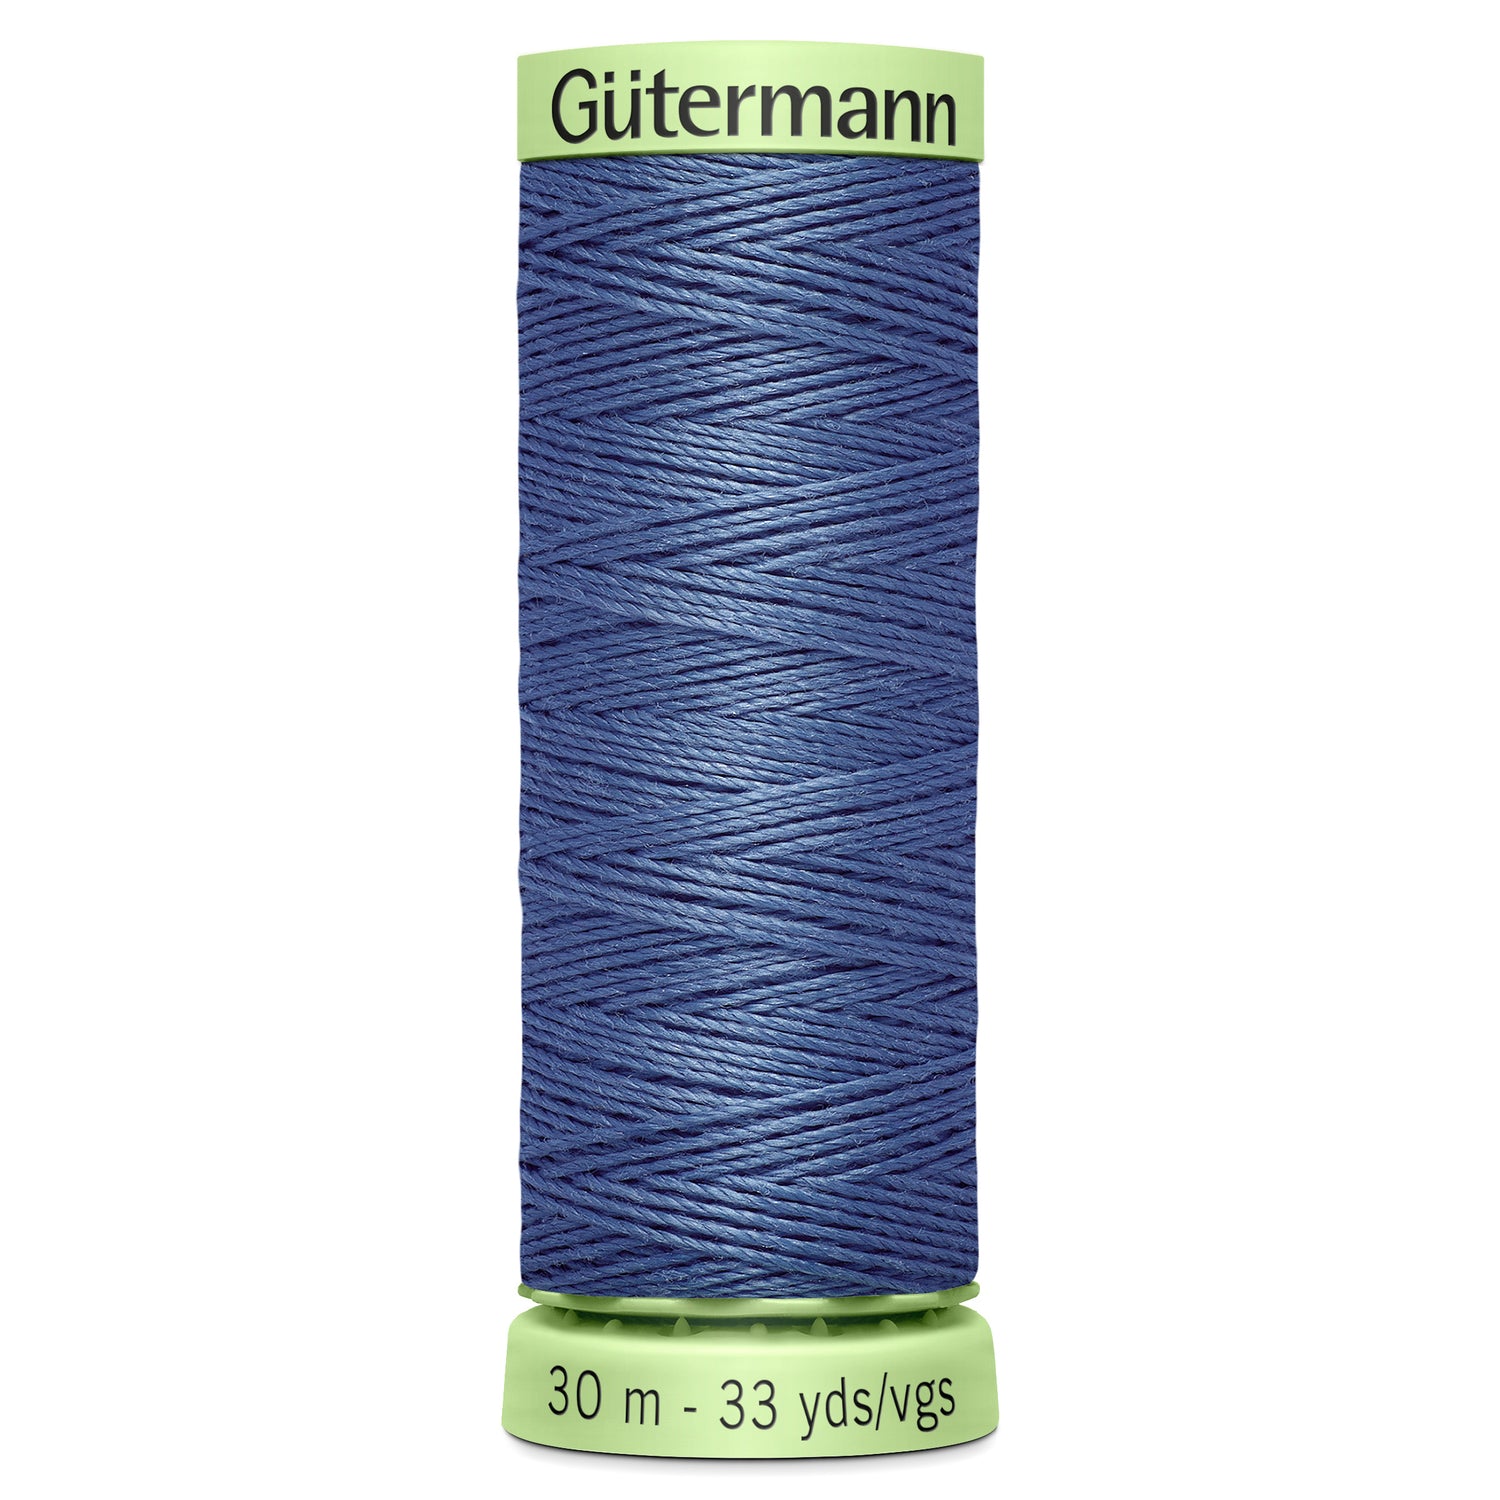 Gutermann Top Stitch Thread, 30m, Mid Blue 112-Thread-Flying Bobbins Haberdashery